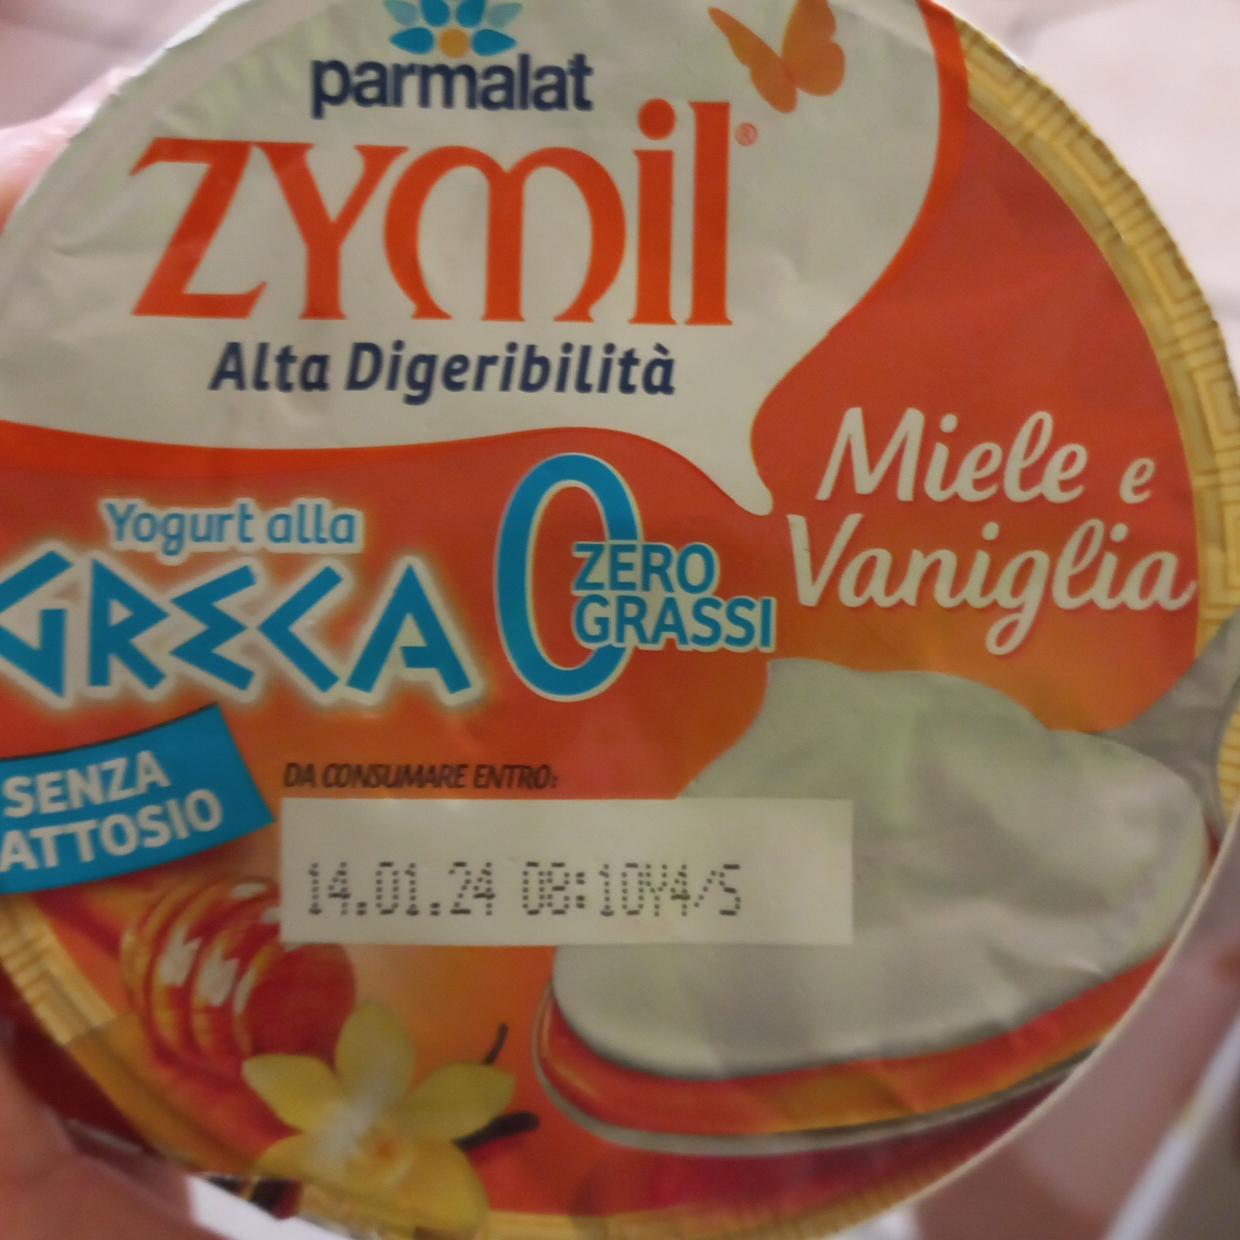 Фото - Zymil alla greca 0% miele e vaniglia Parmalat